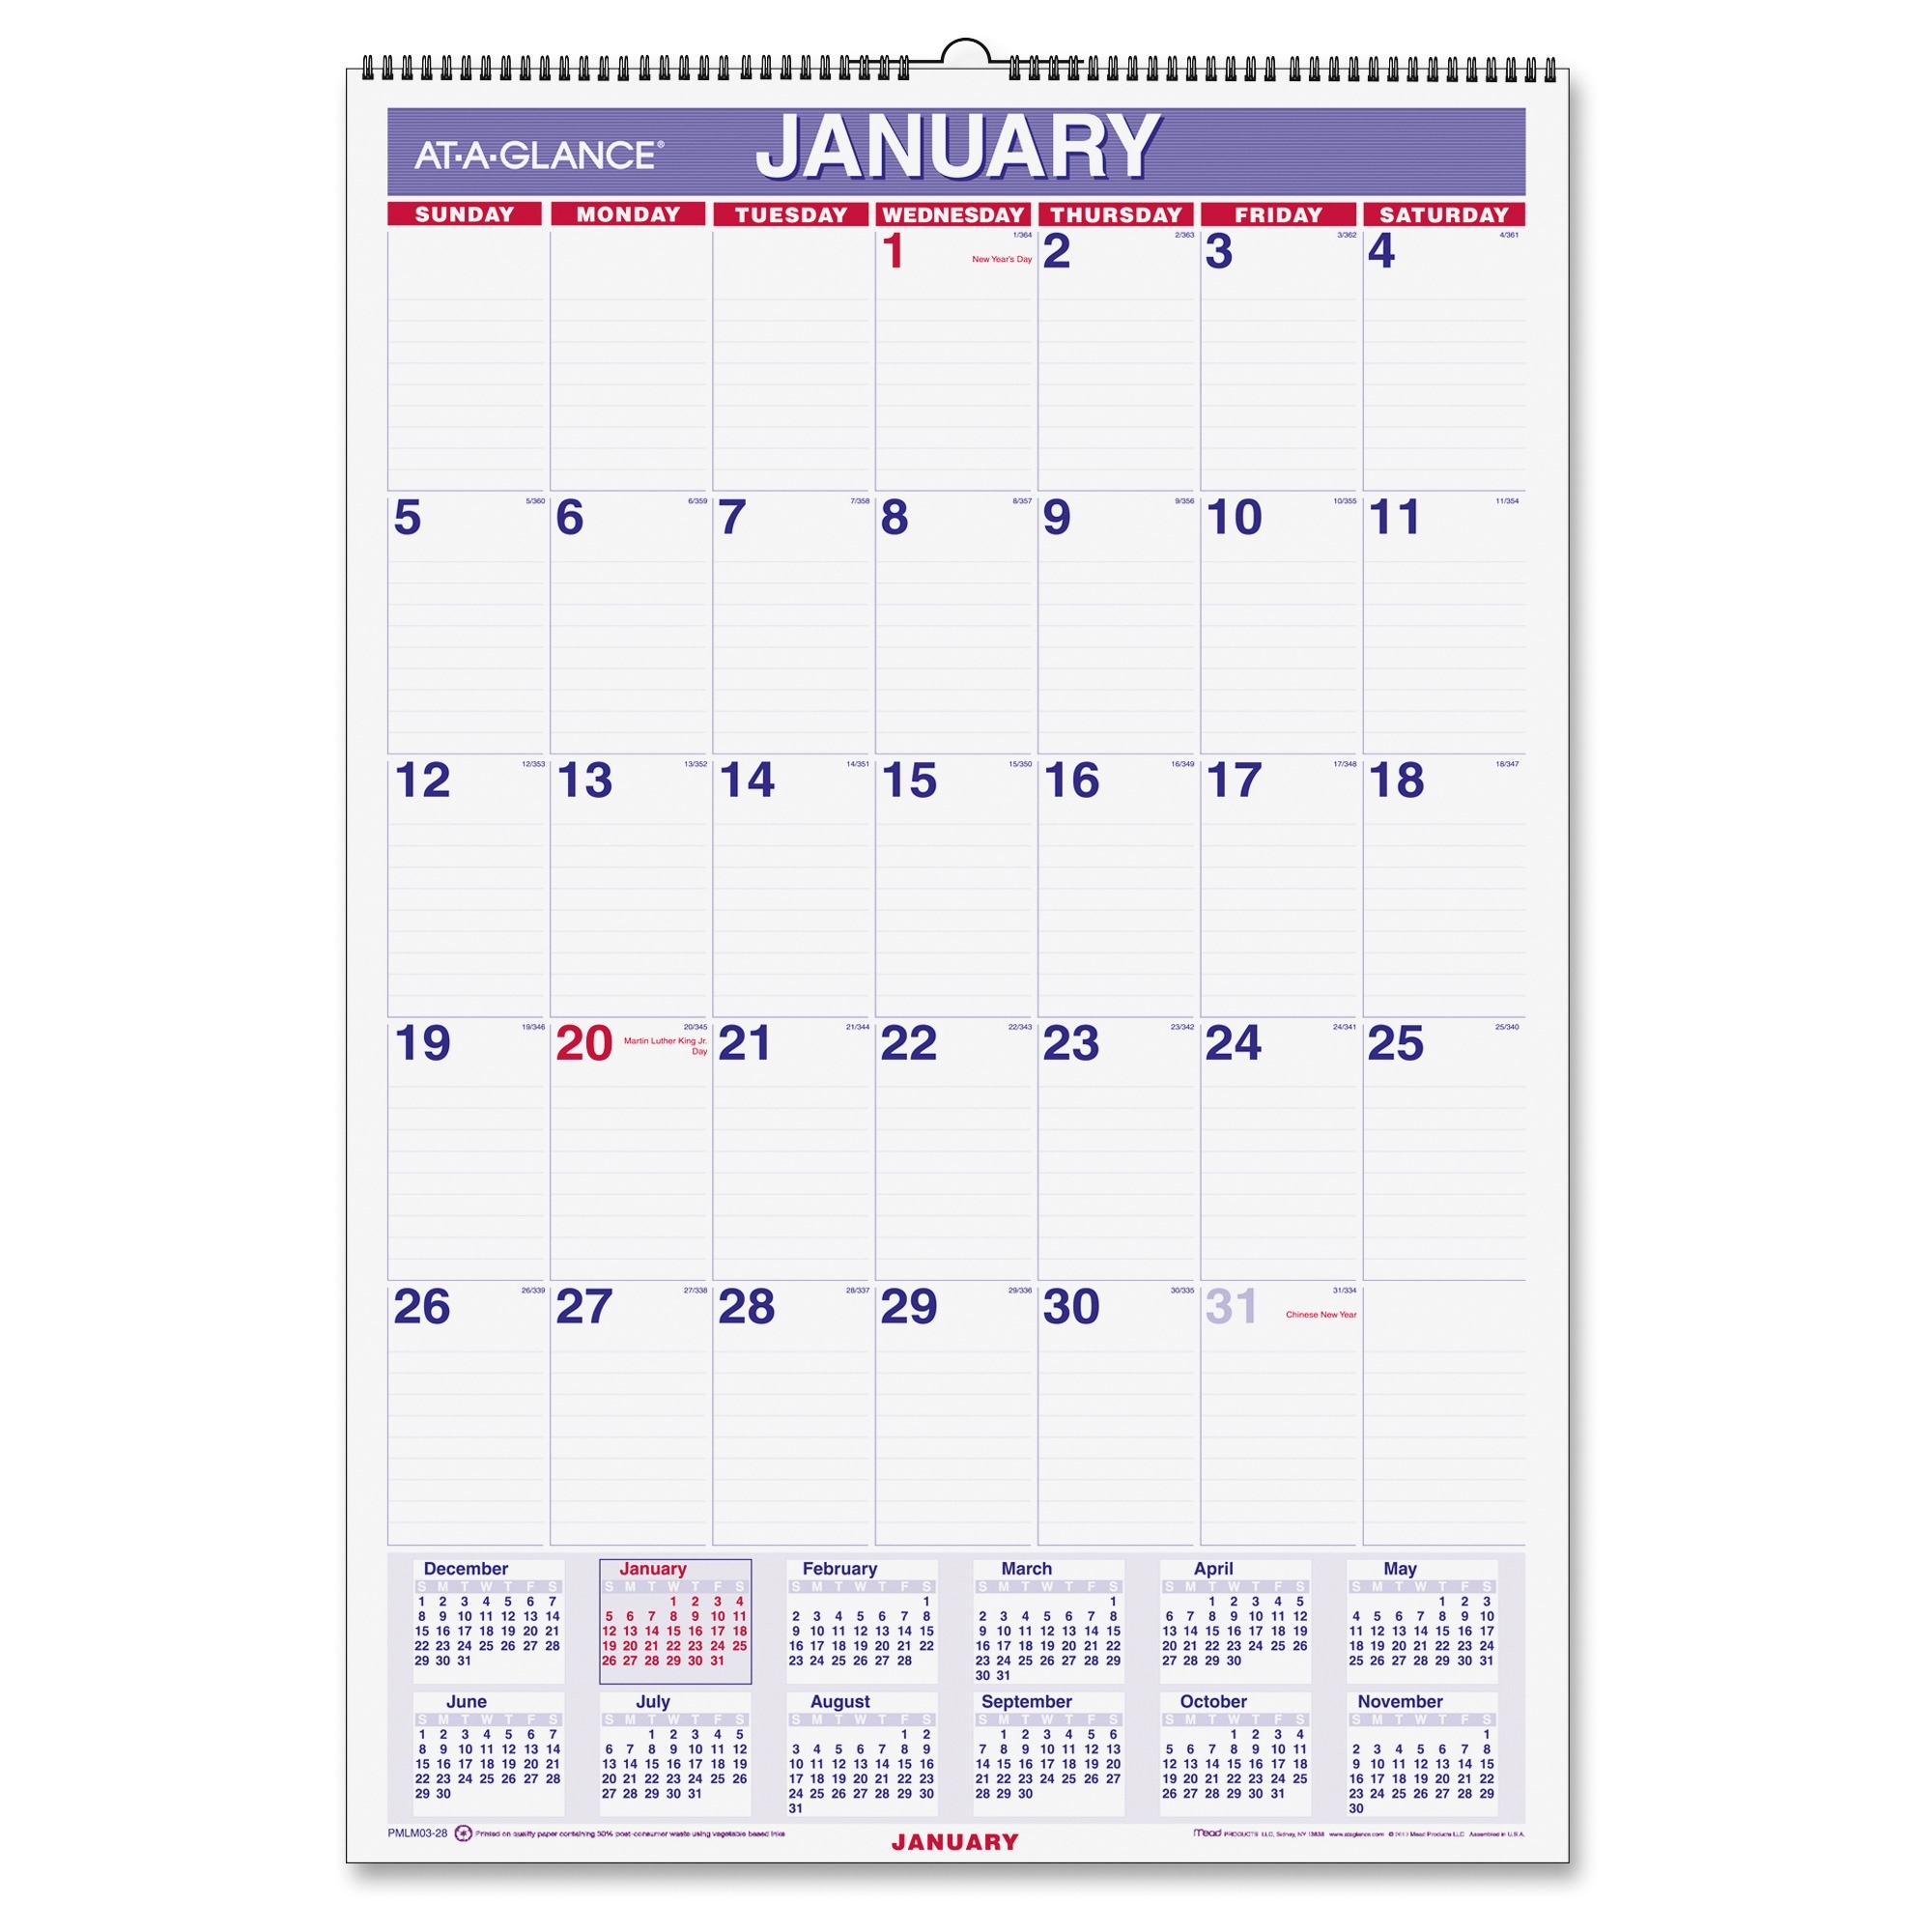 AtAGlance Laminated Wall Calendar LD Products